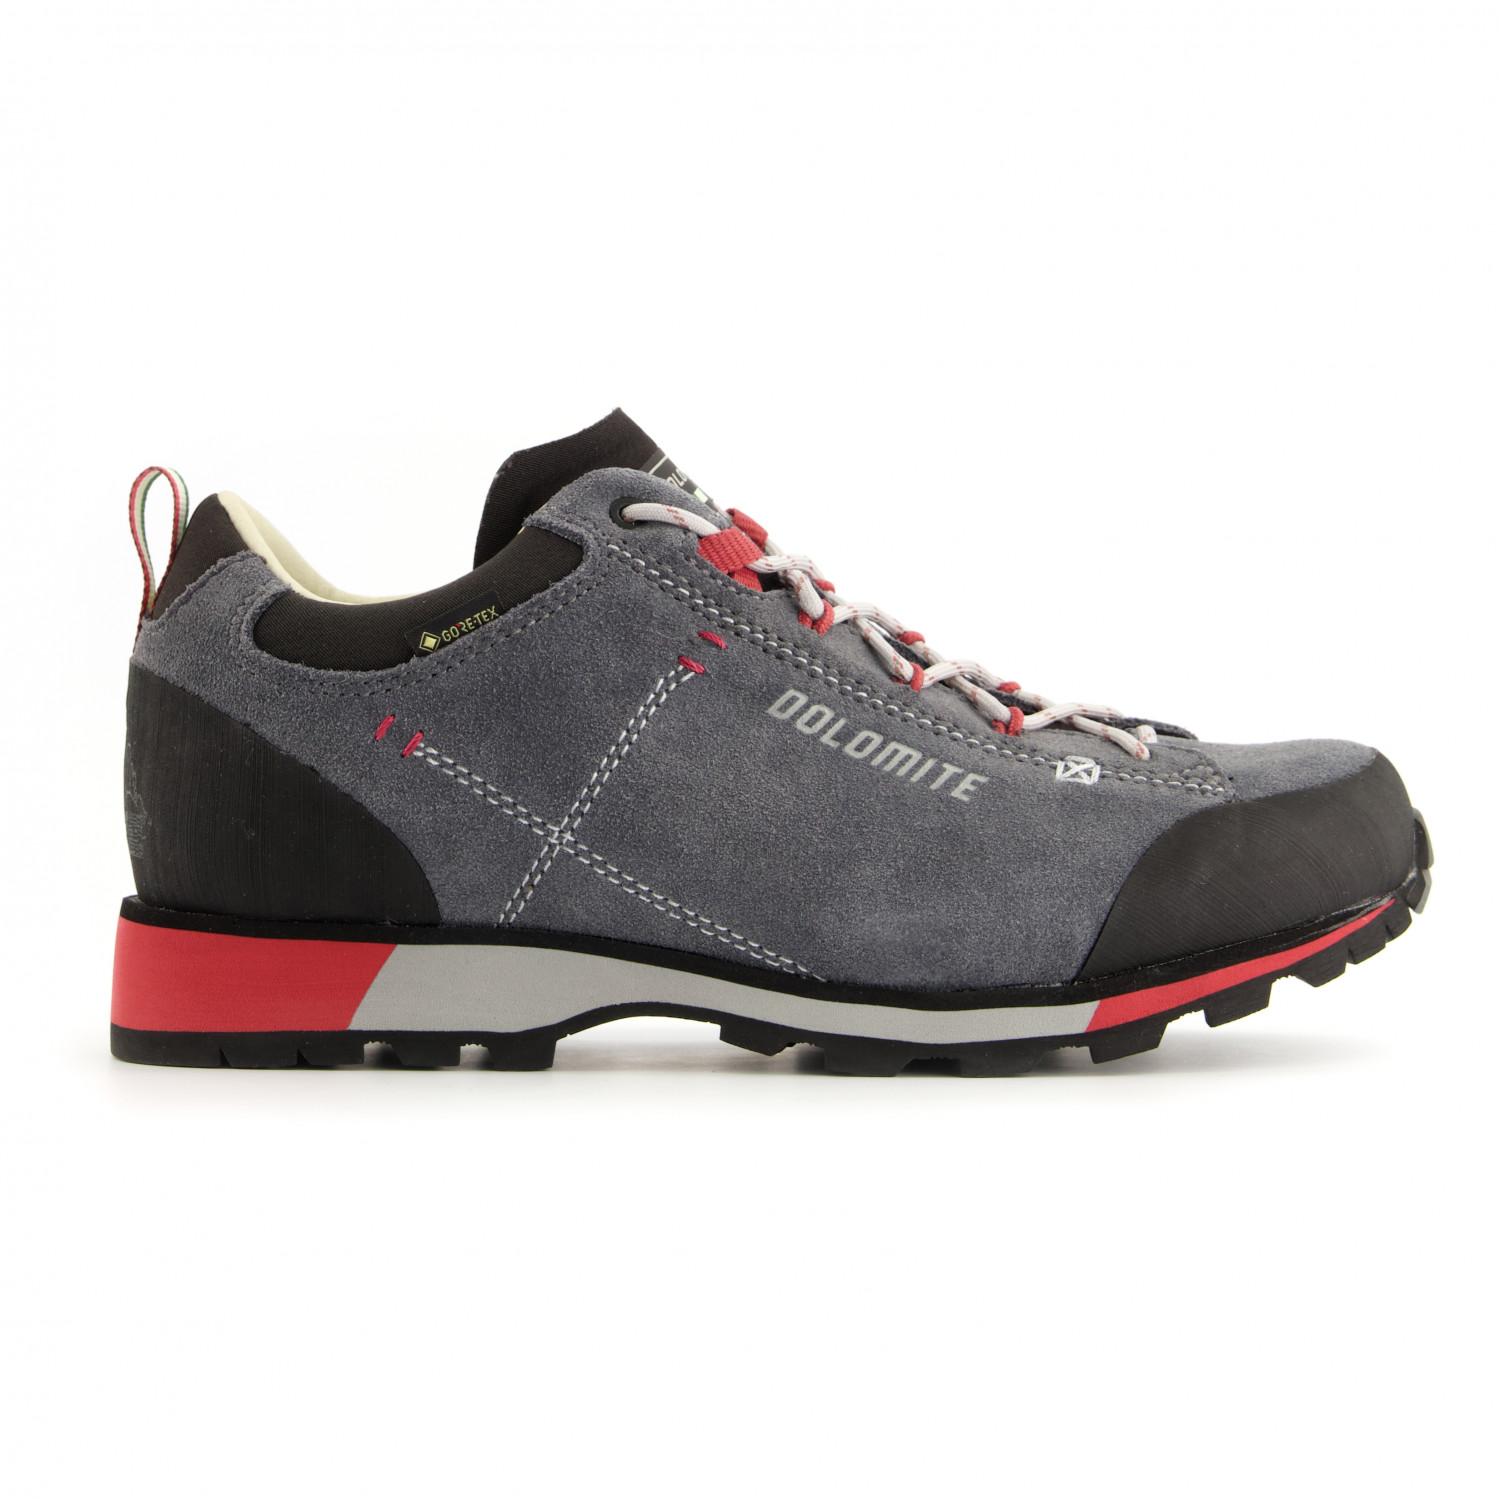 Мультиспортивная обувь Dolomite Women's 54 Hike Low Evo GTX, цвет Gunmetal Grey